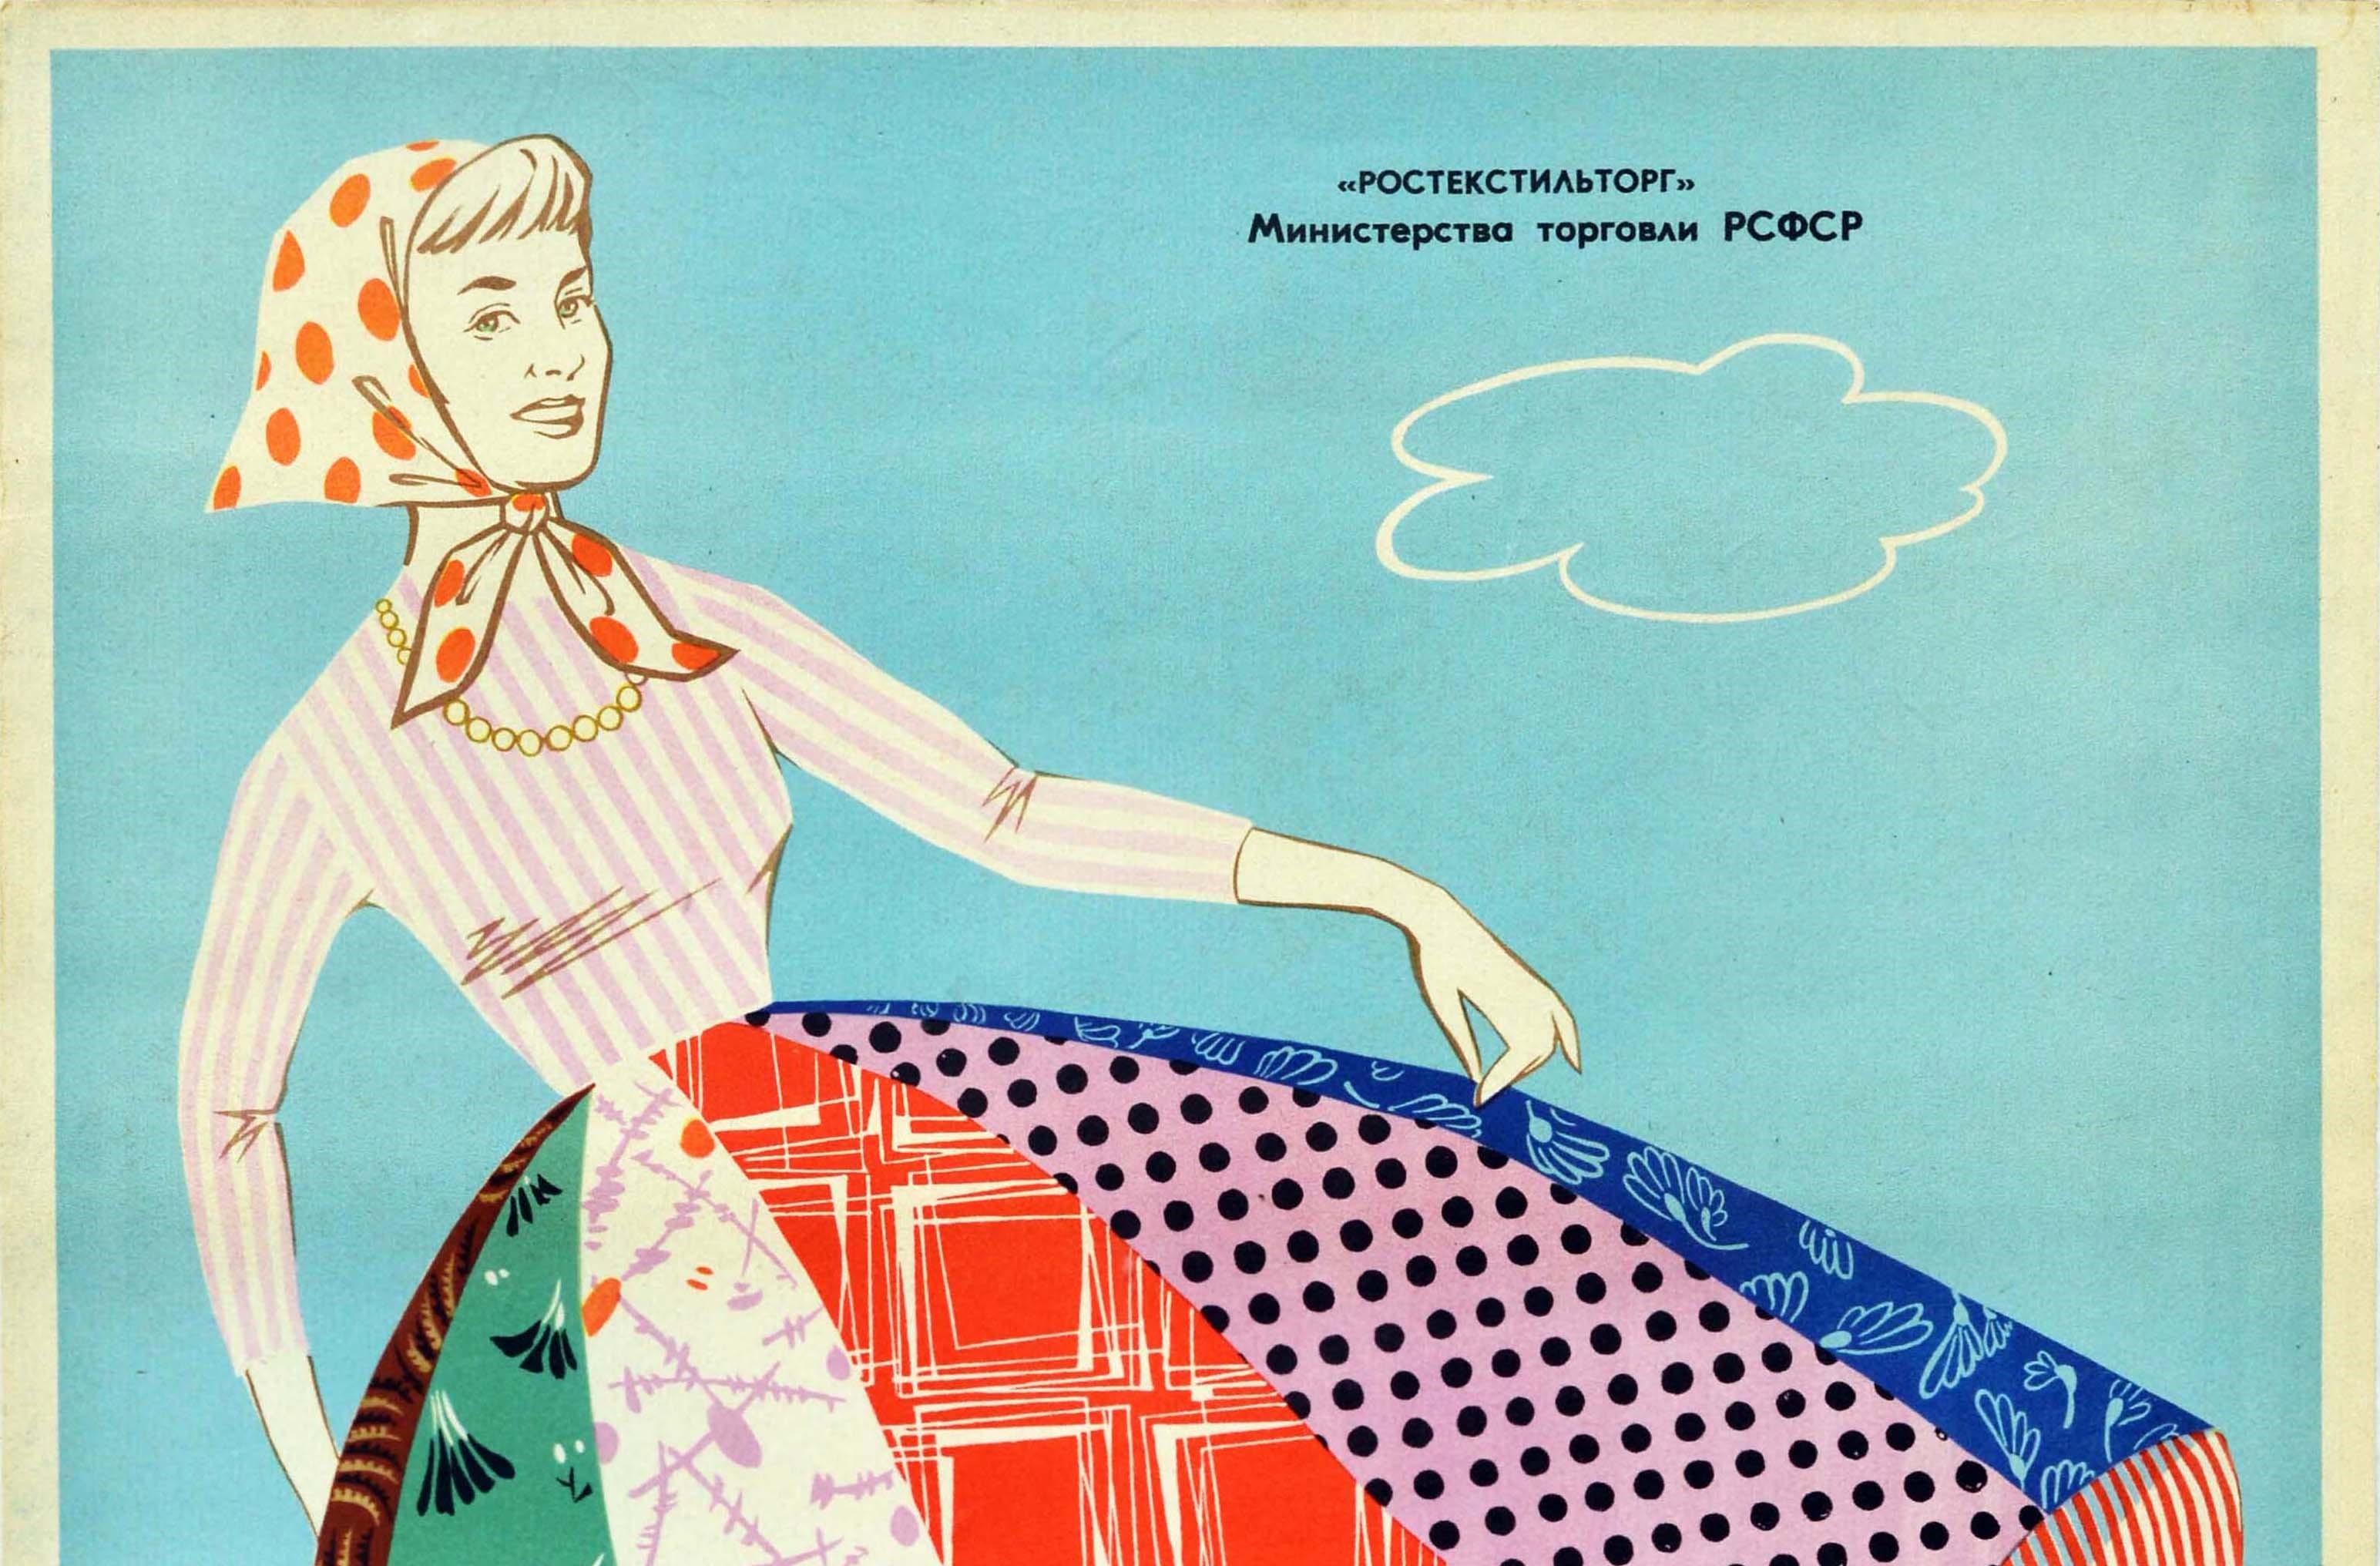 Affiche publicitaire vintage originale émise par le ministère du commerce de la RSFSR (République socialiste fédérative soviétique de Russie). Le dessin représente une jeune femme souriante, vêtue d'une chemise rayée blanche et rose et d'une jupe